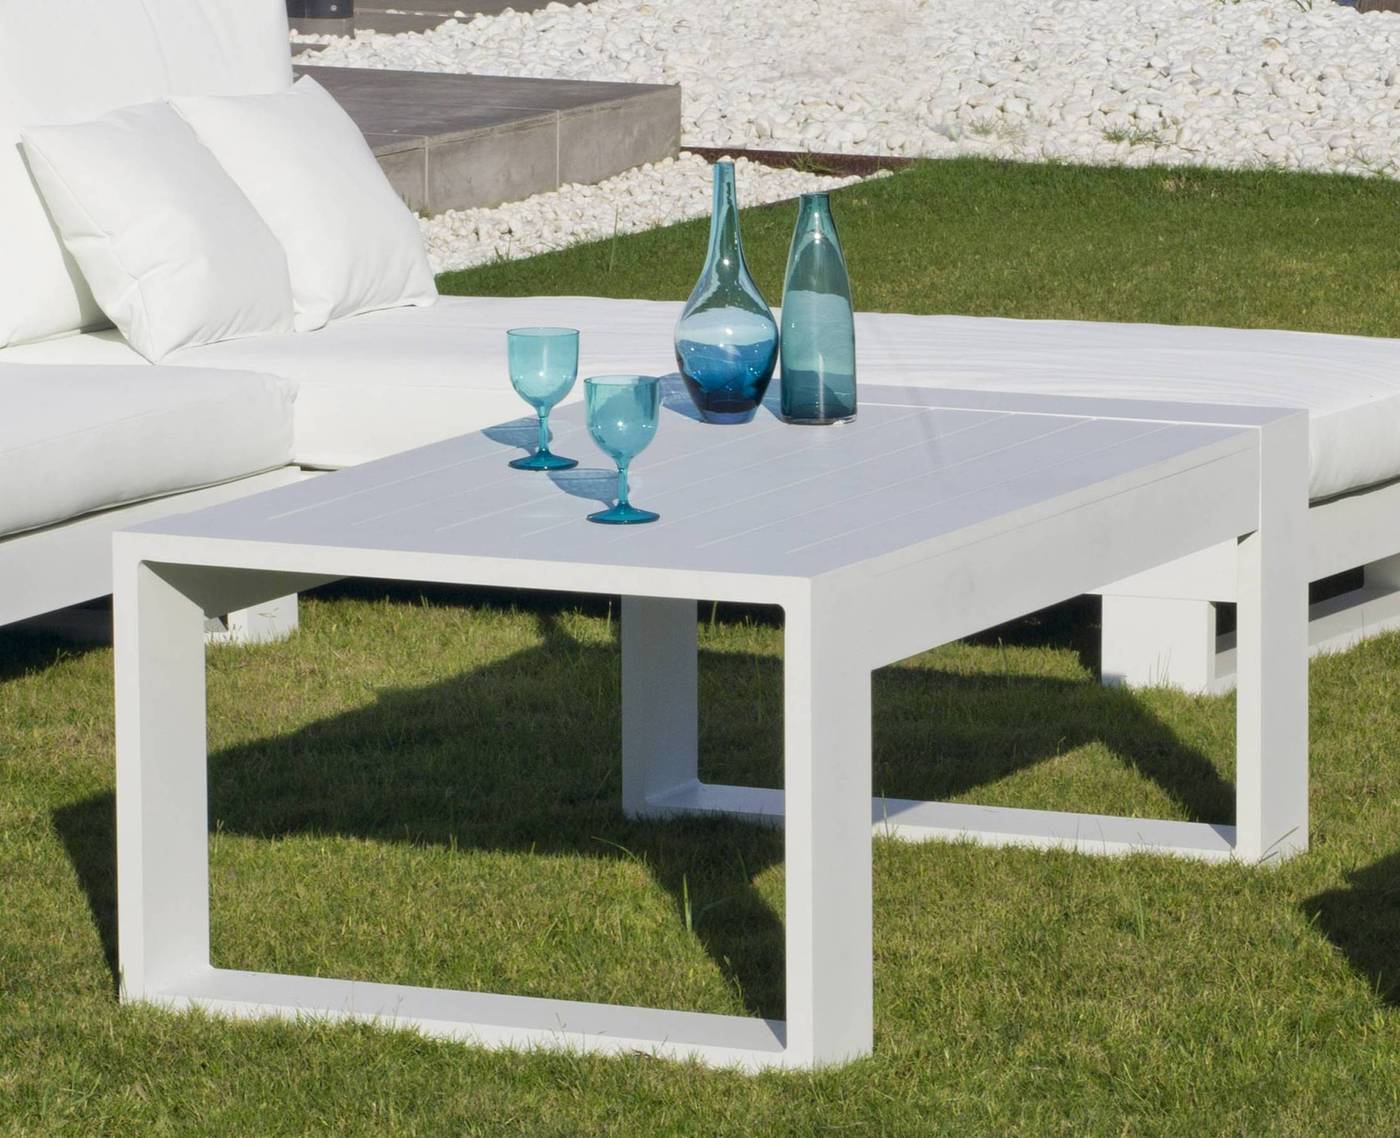 Set Aluminio Luxe Cartago-7 - Conjunto lujoso y robusto de aluminio: 1 sofá de 2 plazas + 2 sillones + 1 mesa de centro + cojines.